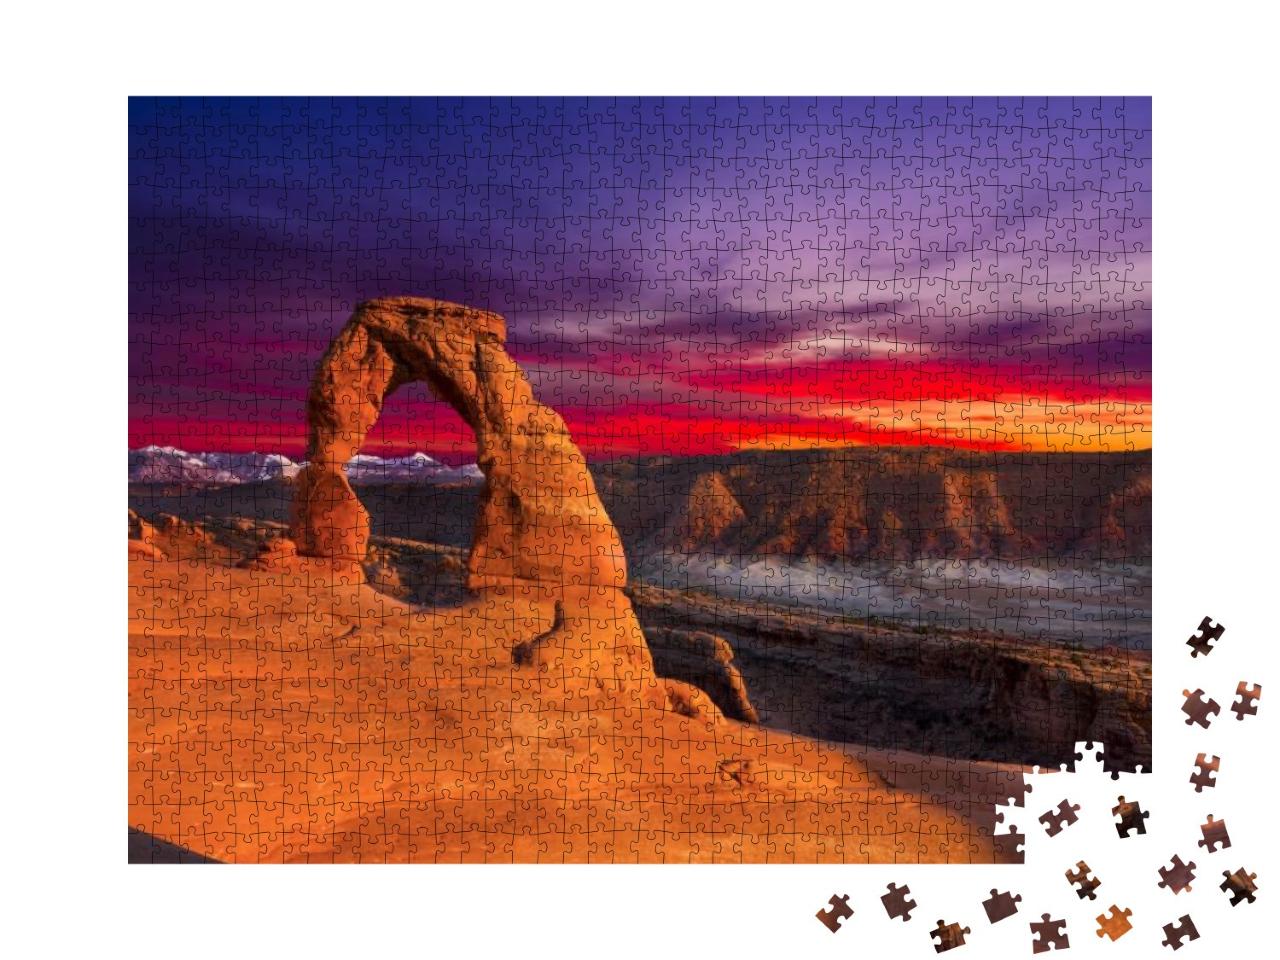 Puzzle 1000 Teile „Der Arches National Park, Utah“